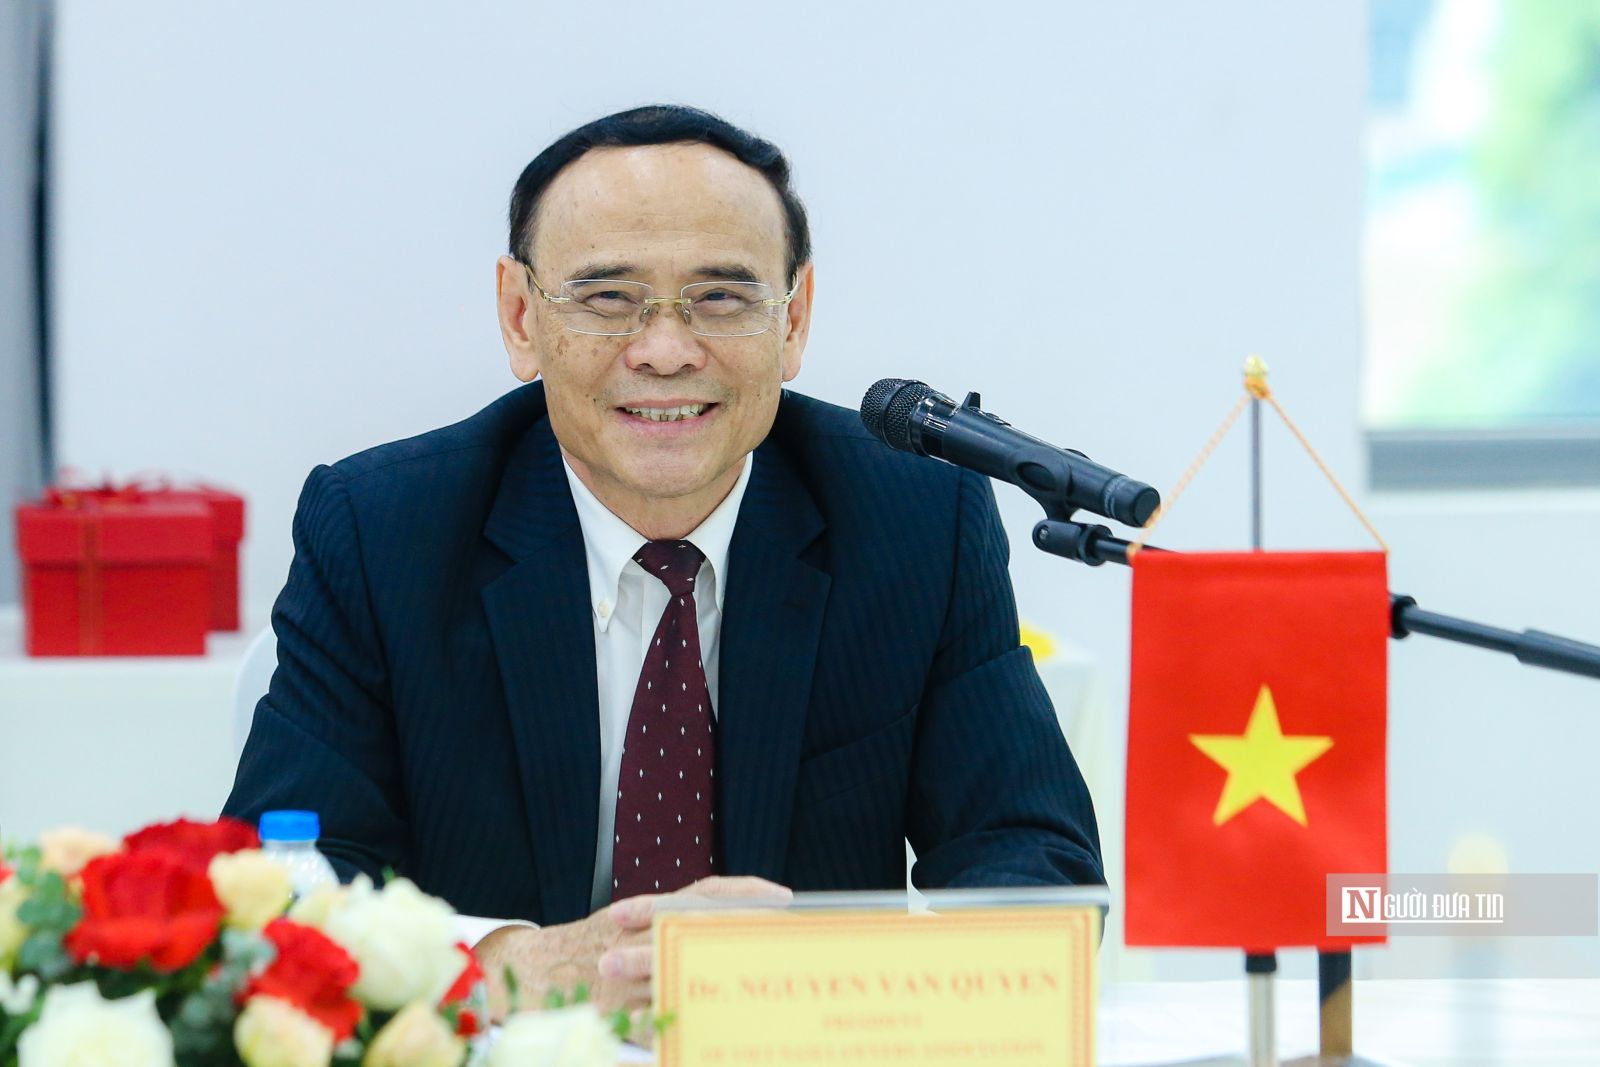 Chủ tịch Hội Luật gia Liên bang Nga thăm và làm việc với Hội Luật gia Việt Nam